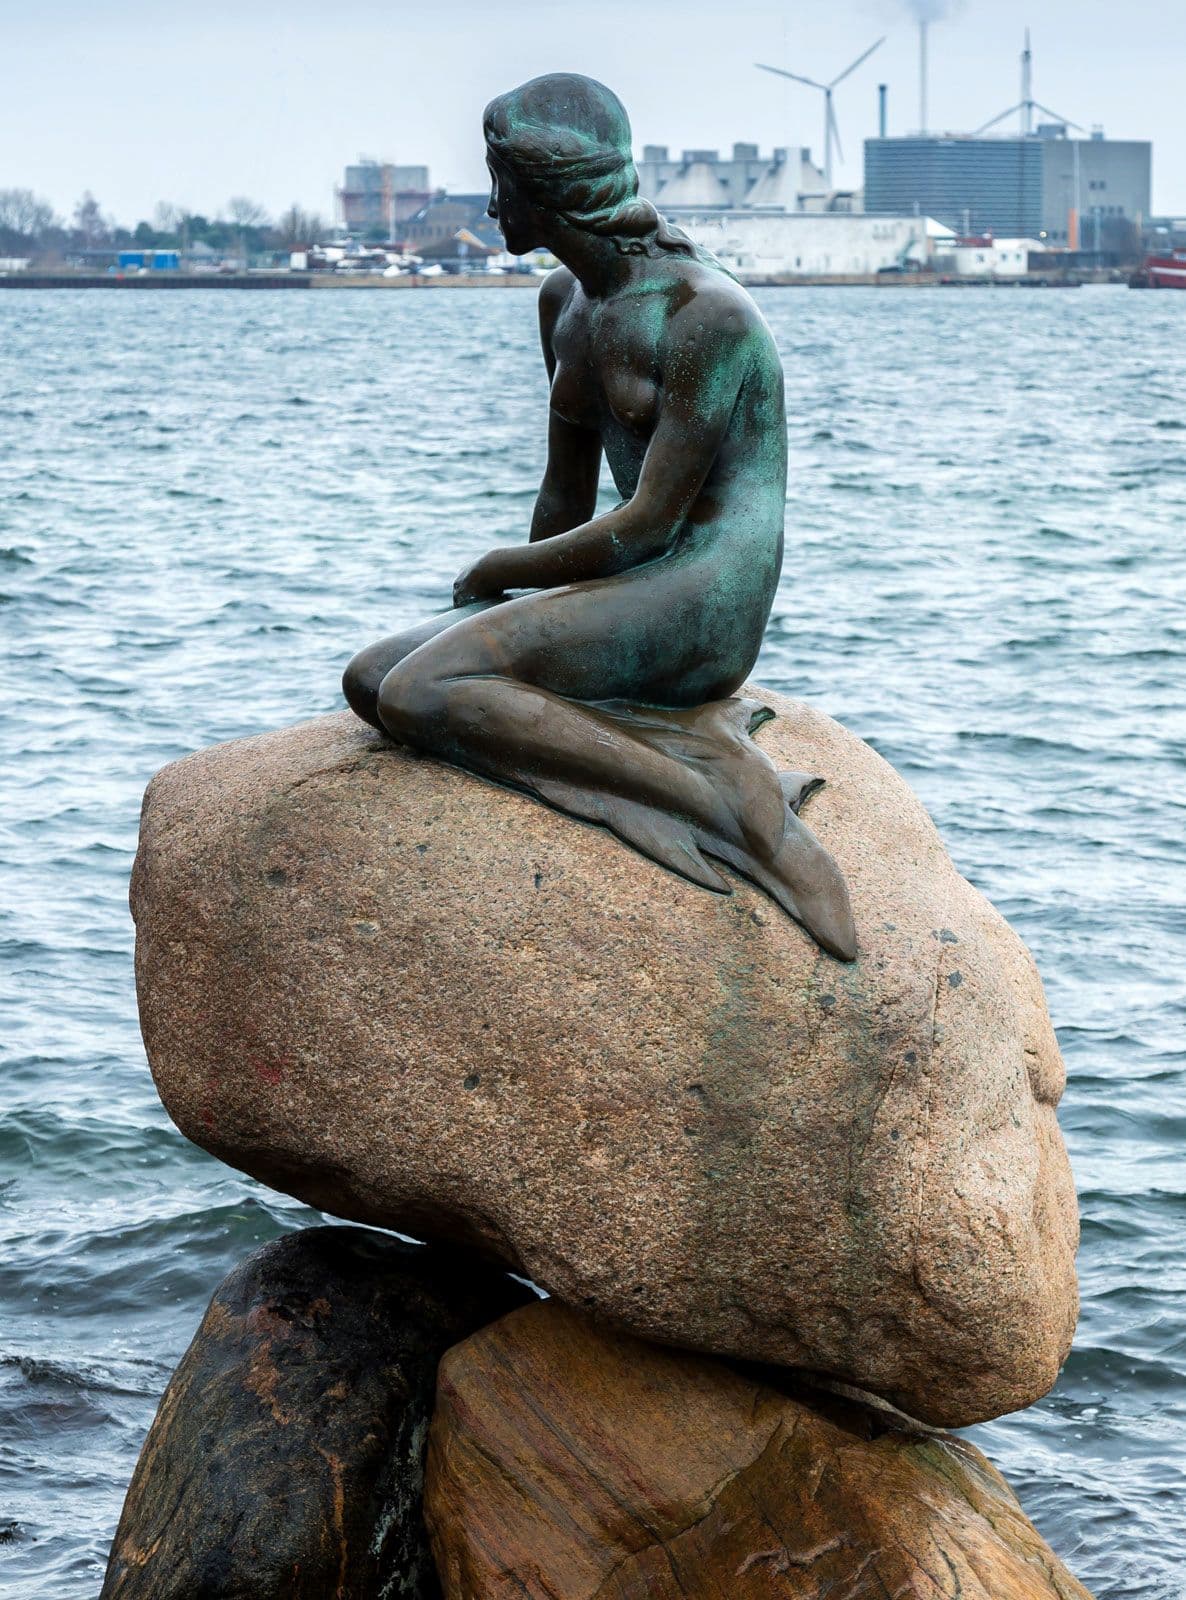 The Little Mermaid (1913) - sculpture by sculptor Edvard Eriksen